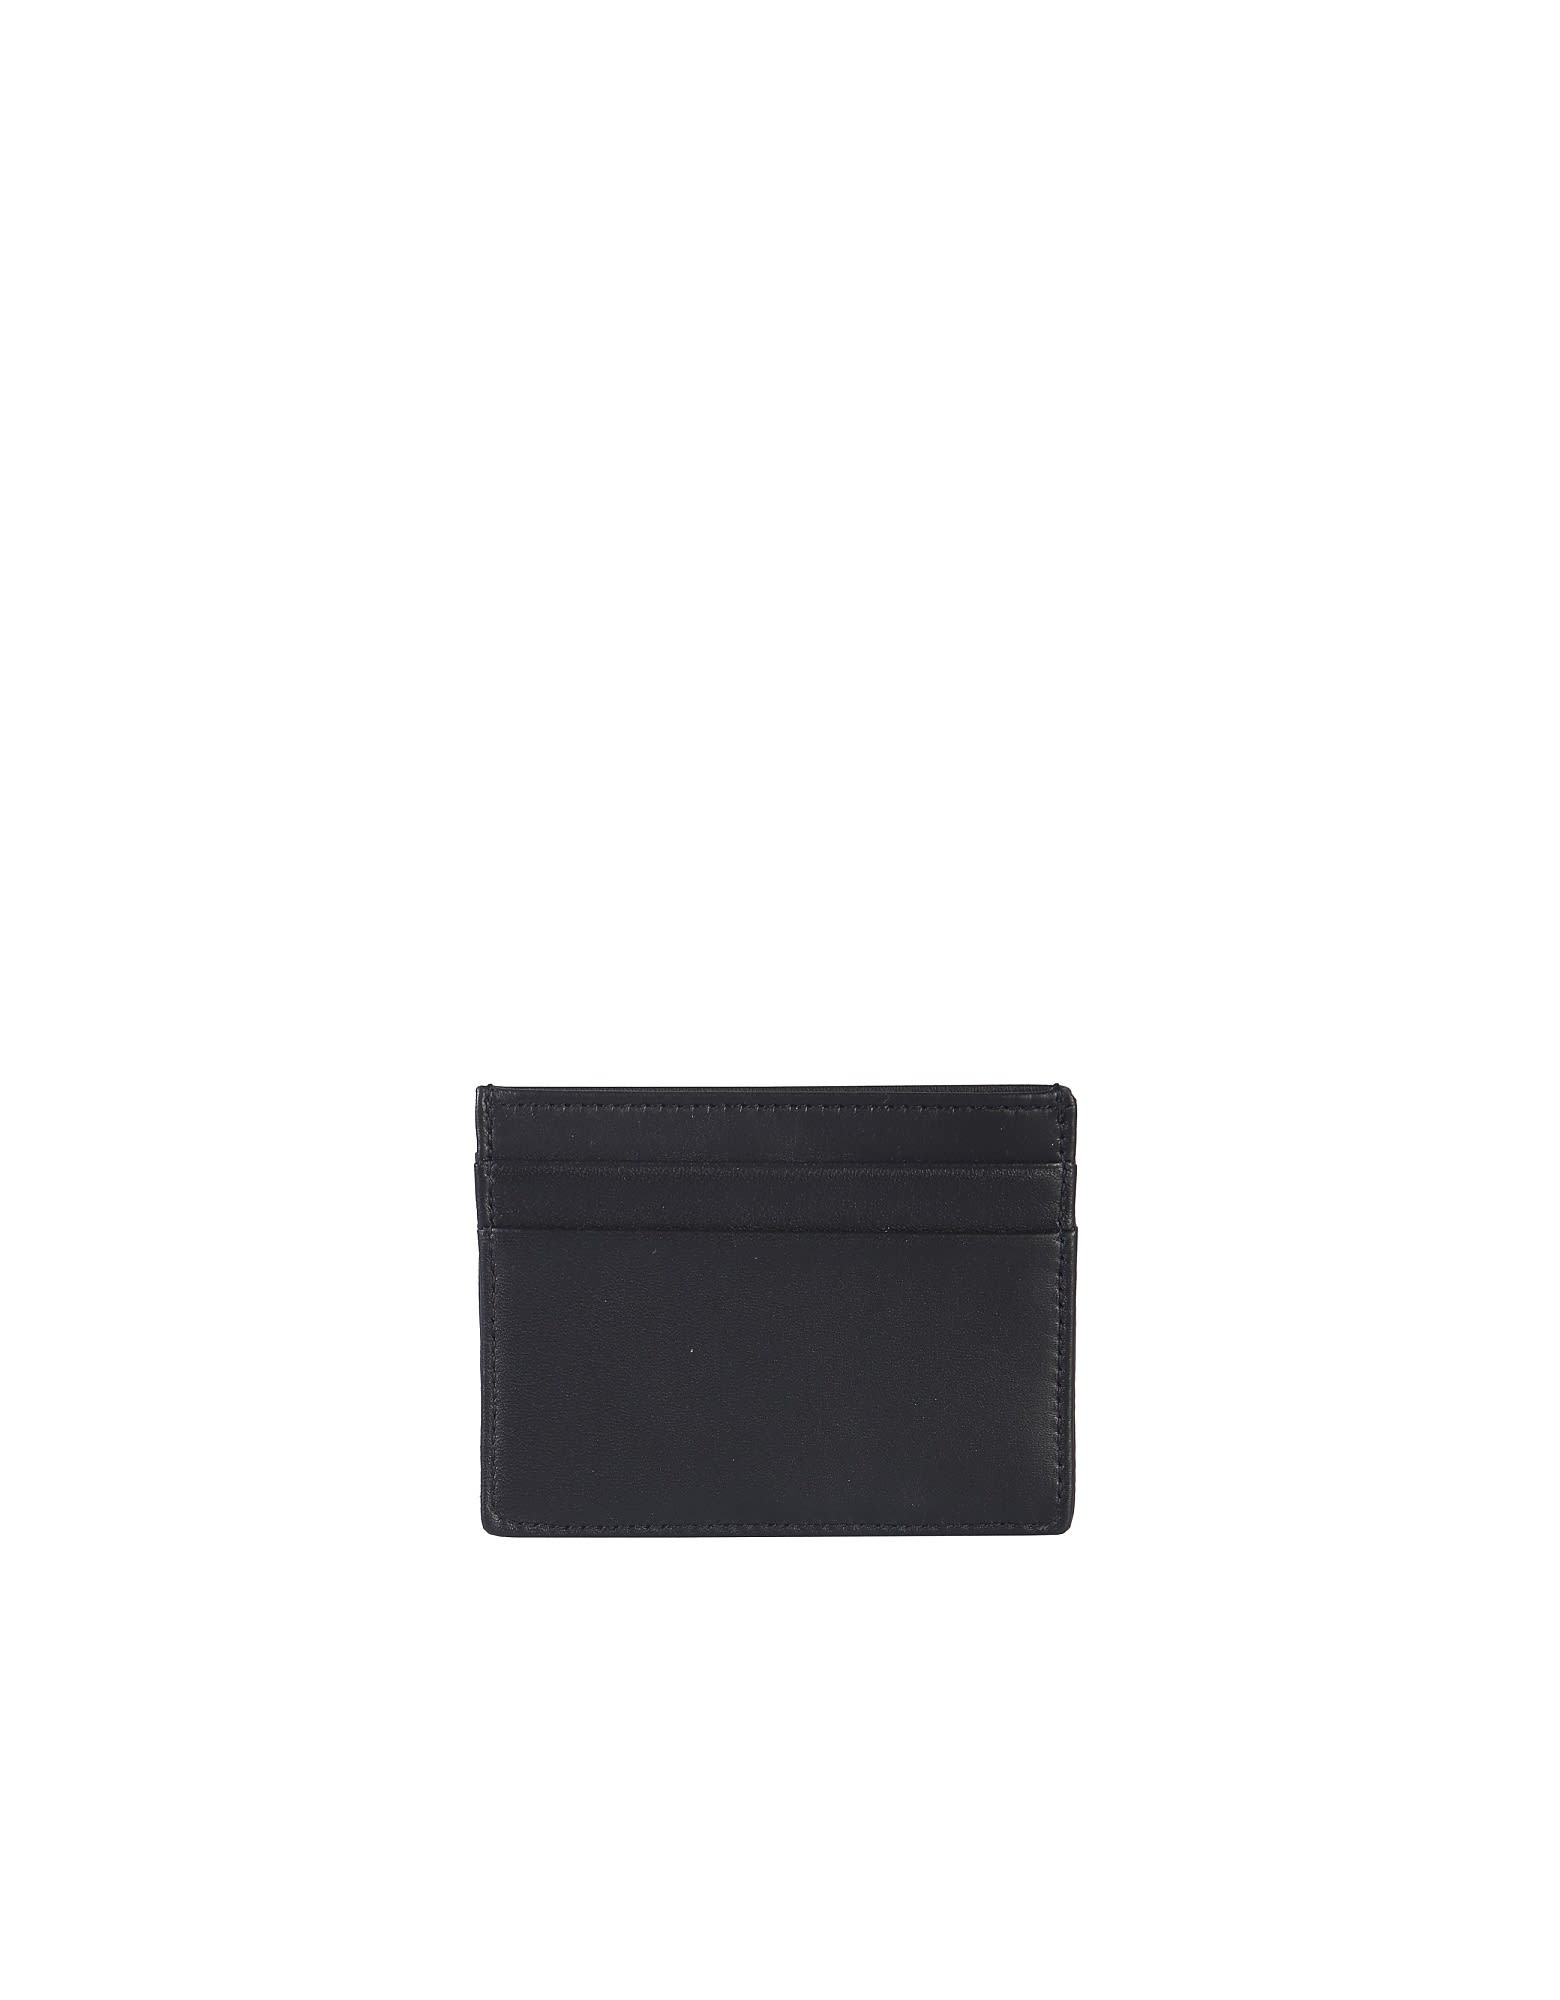 Dolce & Gabbana Devotion Mate Card Holder In Black | ModeSens